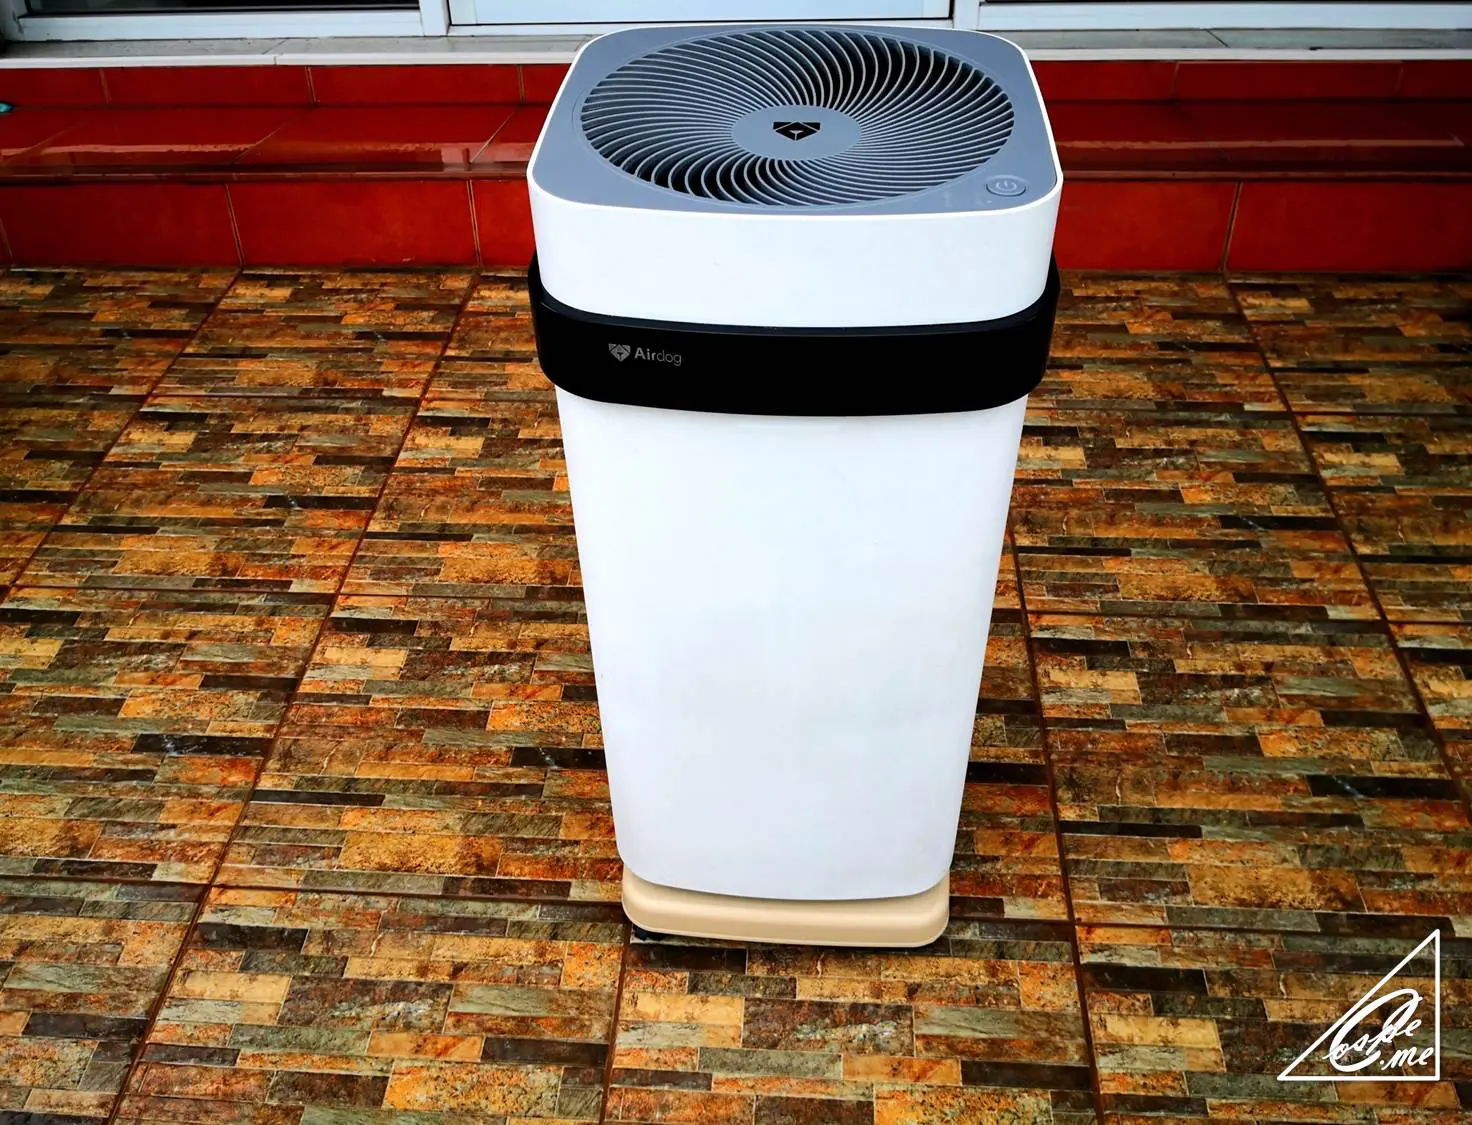 冷暖房/空調 空気清浄器 Airdog X5空気清浄機を2年使い込んだガチ購入者の口コミ